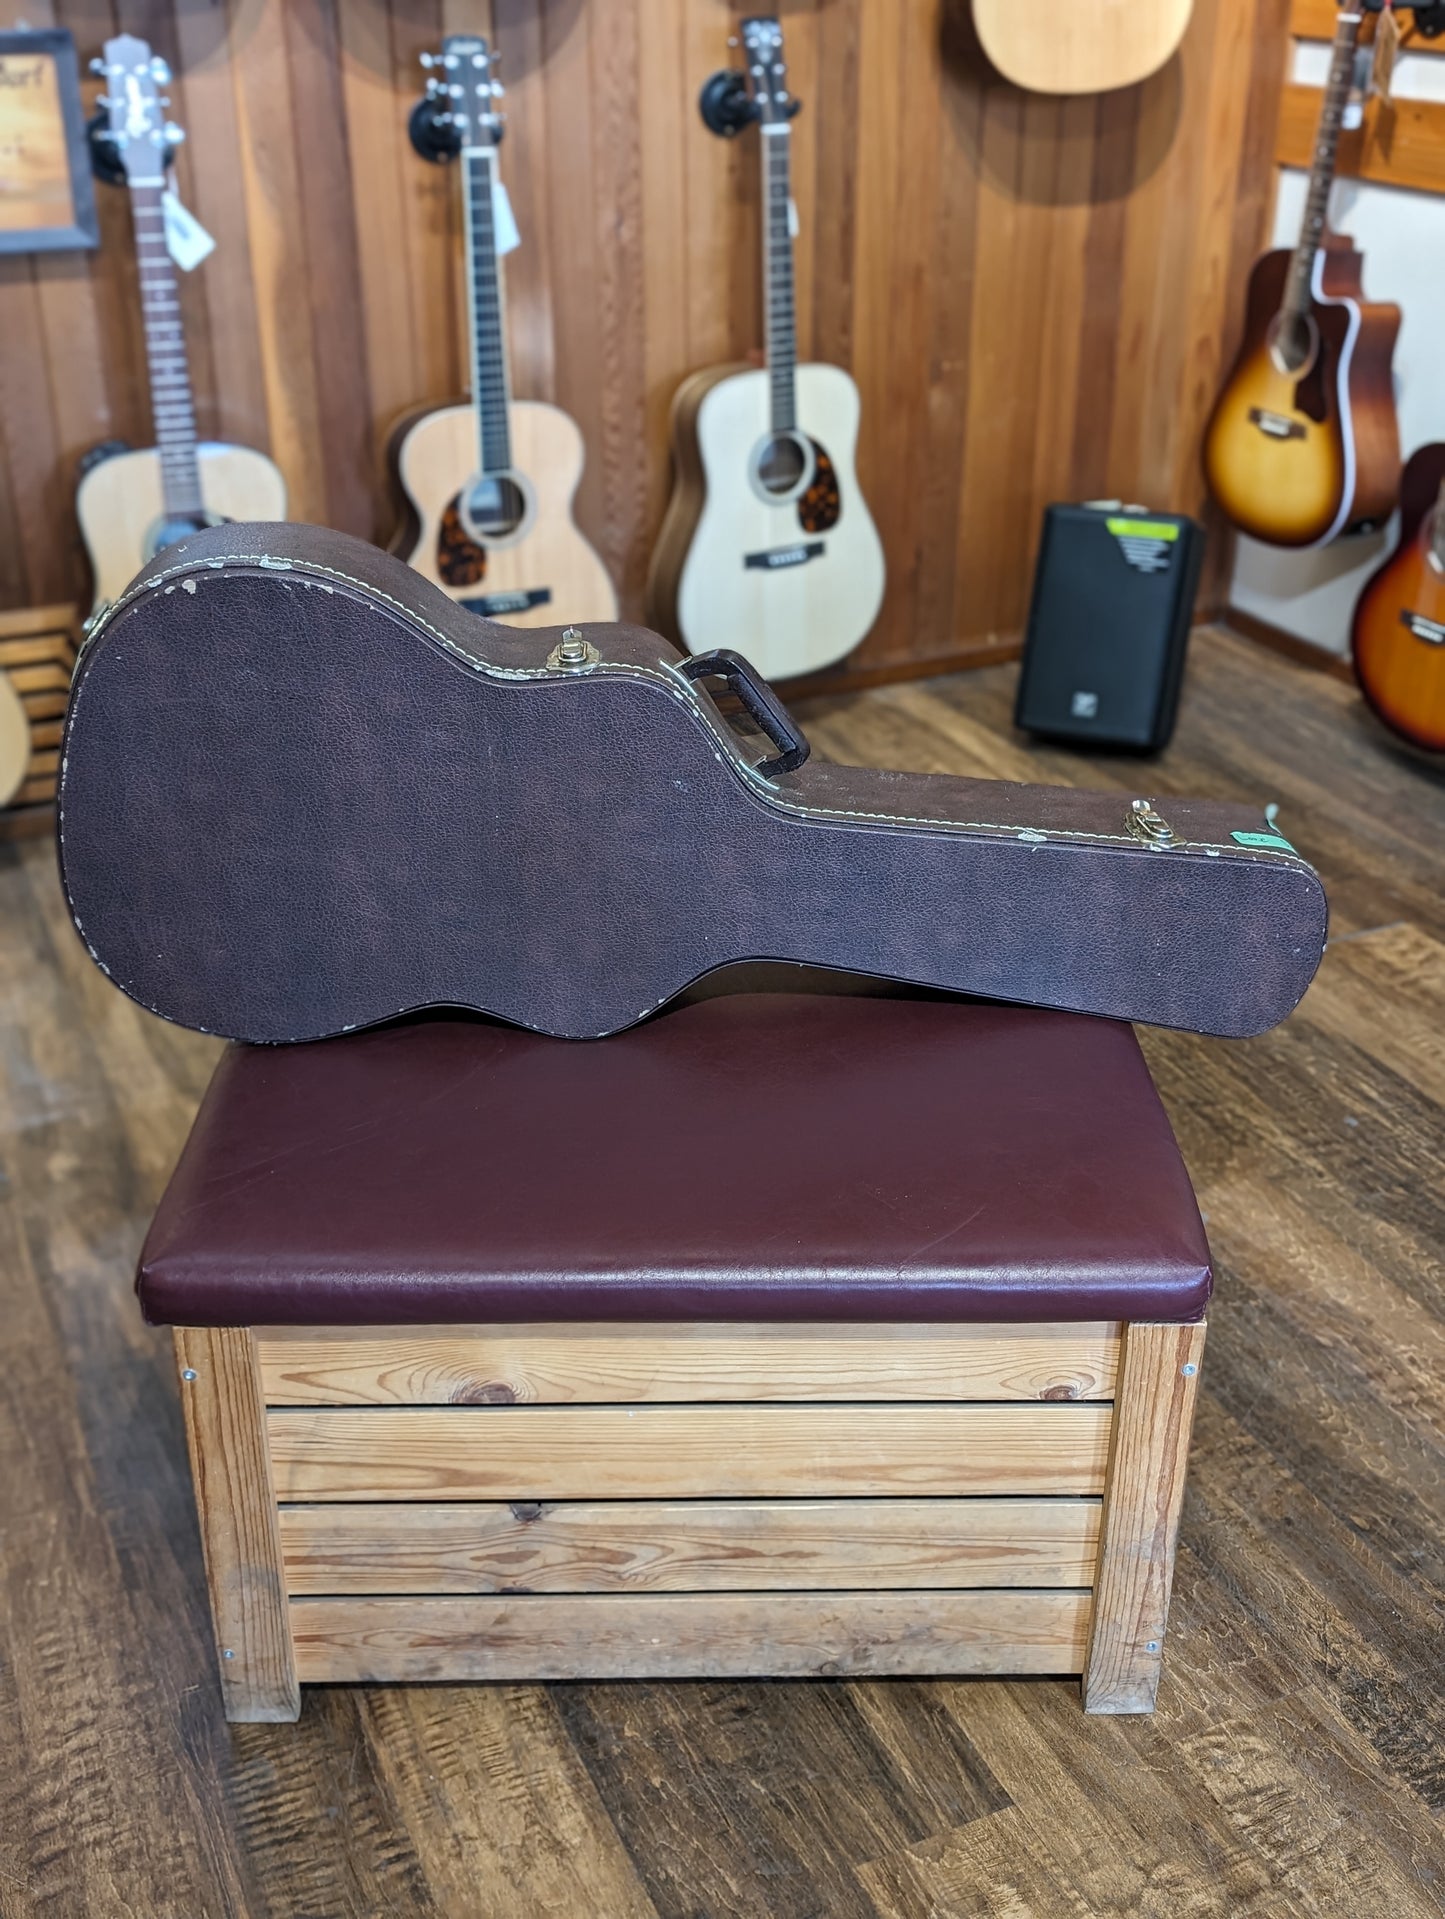 Seagull Amber Trail CW Folk SG EQ Acoustic/Electric Guitar w/Case (Used)